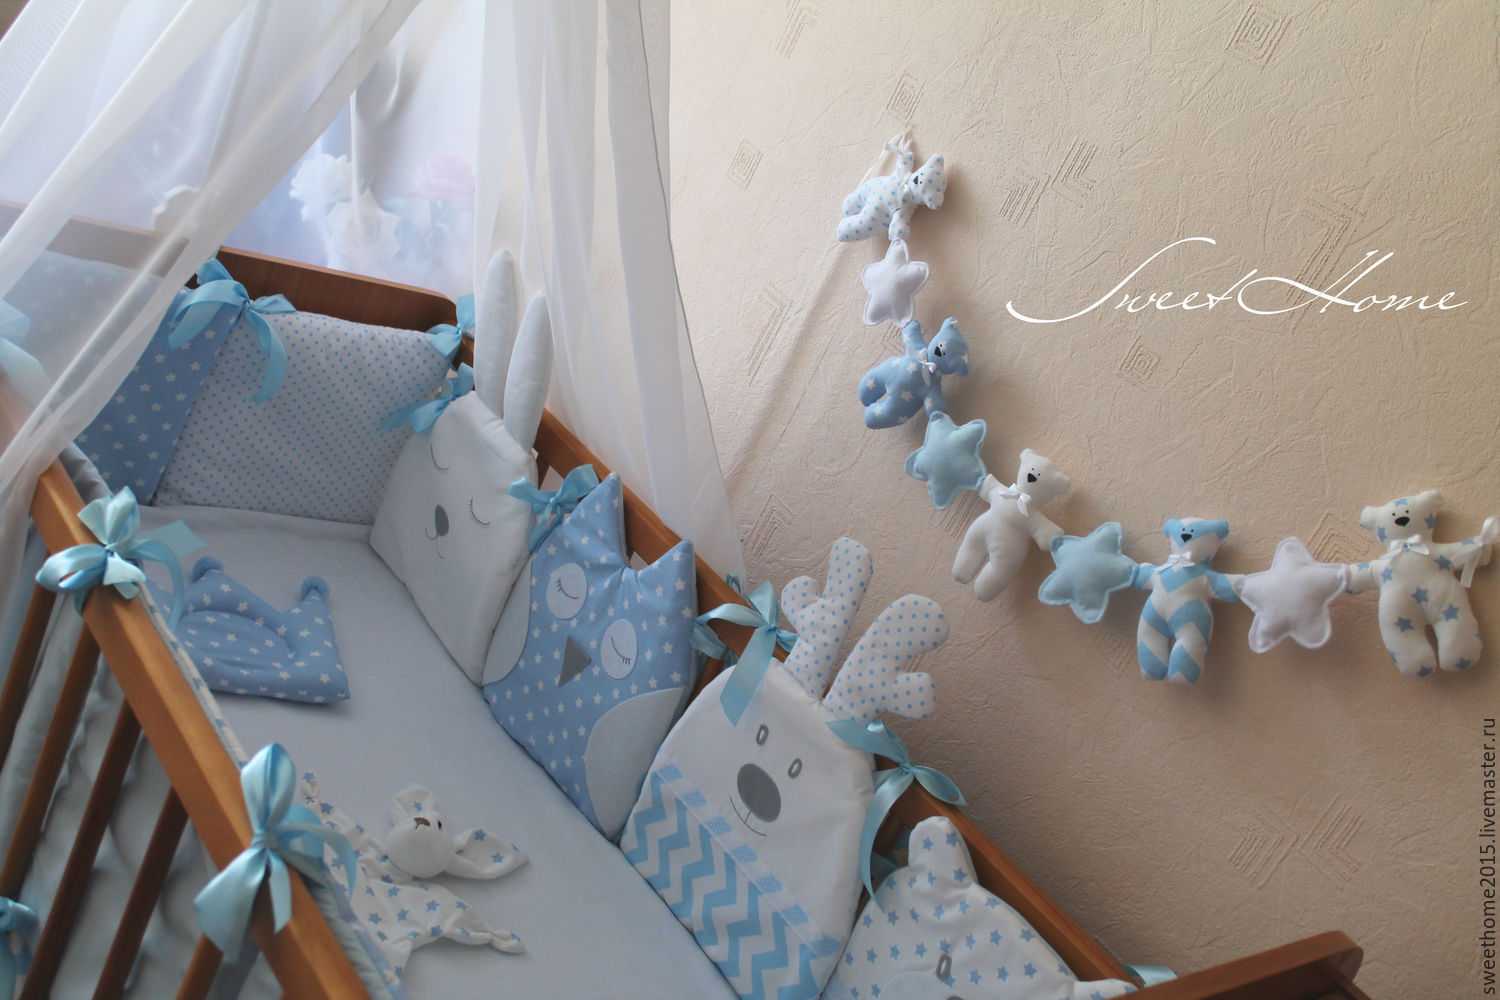 Варианты декора кровати для новорожденного Как украсить кровать своими руками для девочки или мальчика